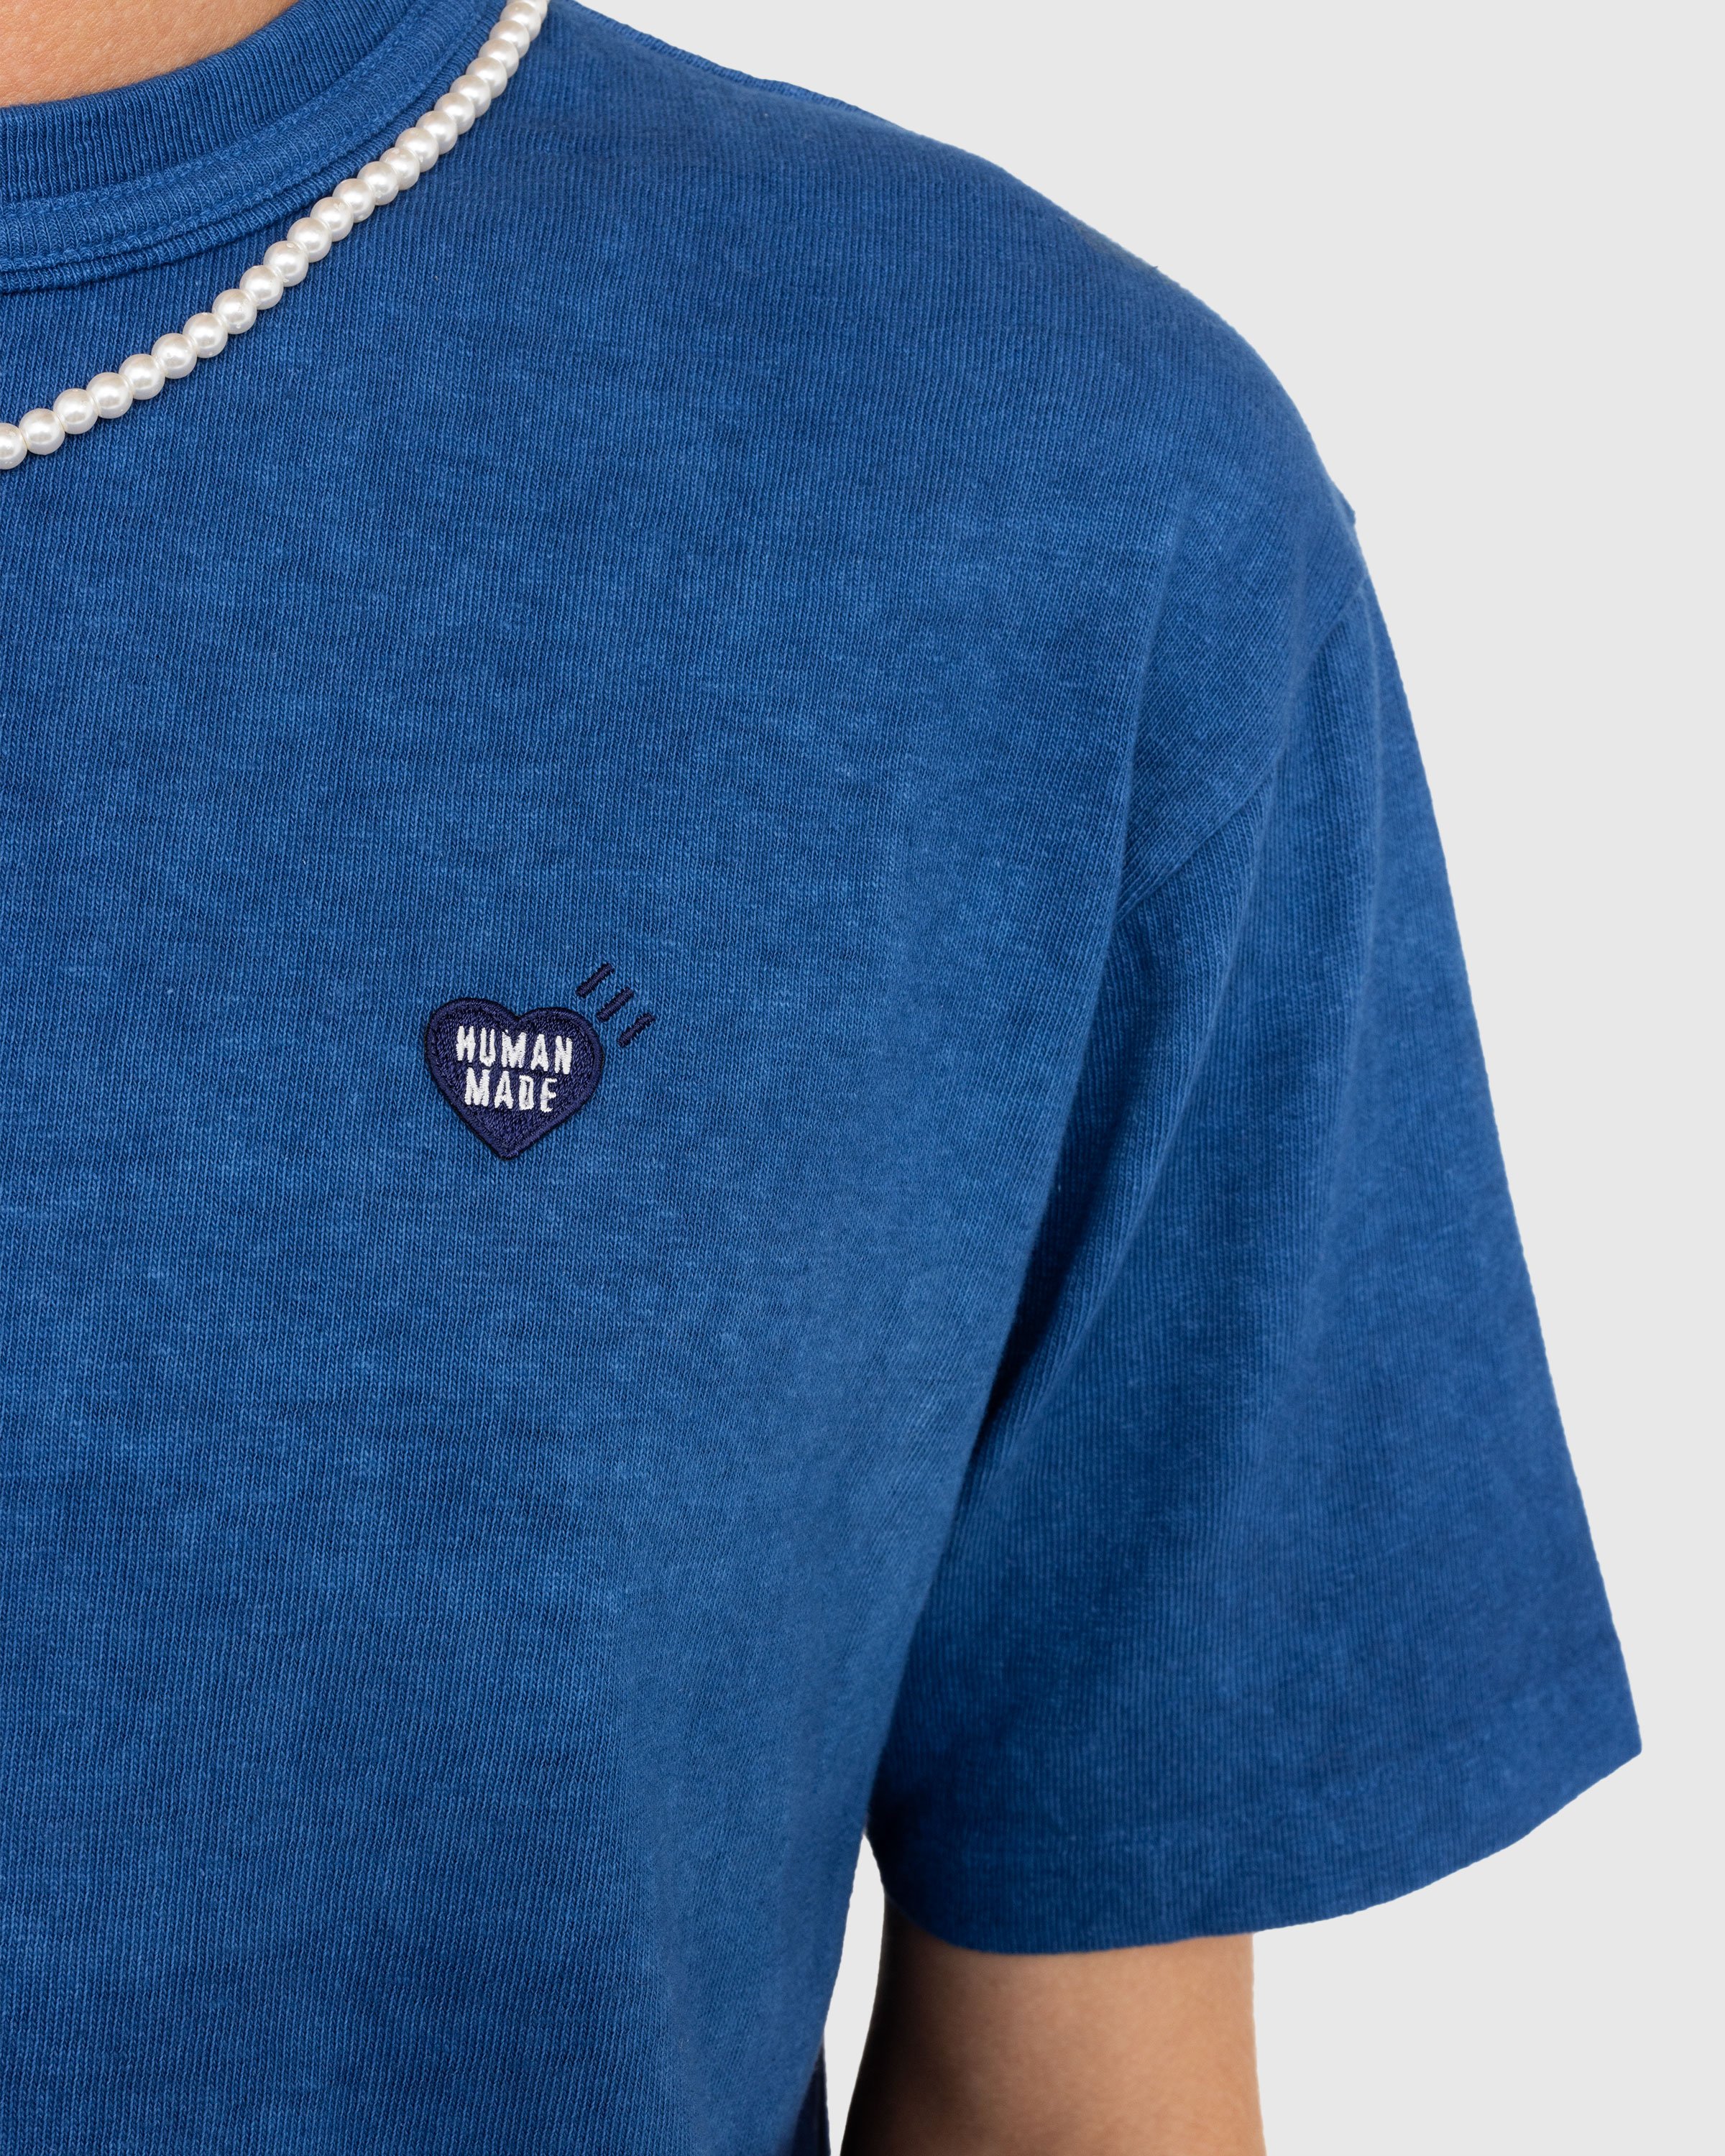 Human Made - Ningen-sei Indigo Dyed T-Shirt #2 Blue - Clothing - Blue - Image 4